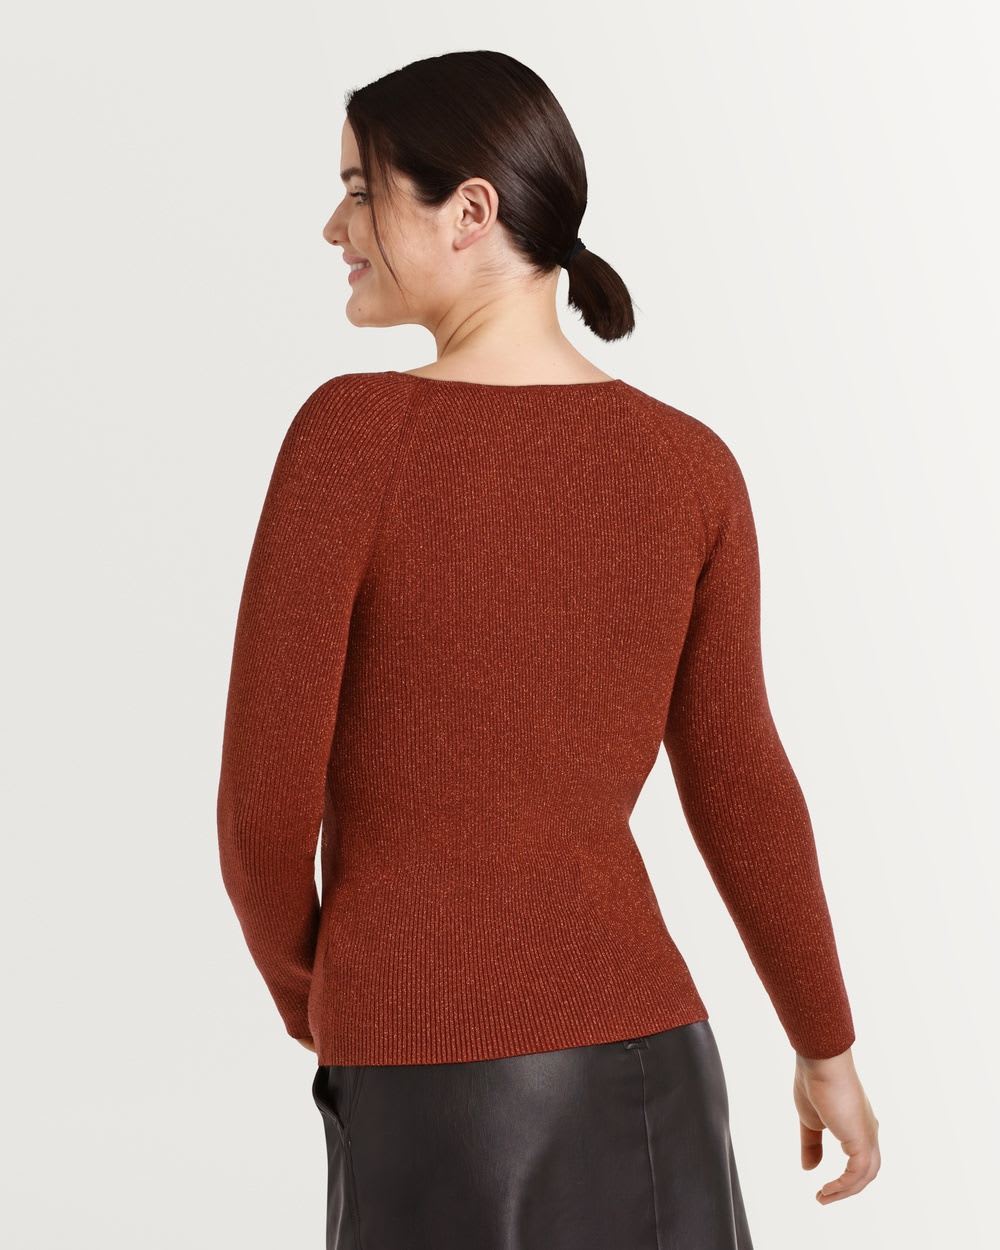 Bustier Knit Sweater